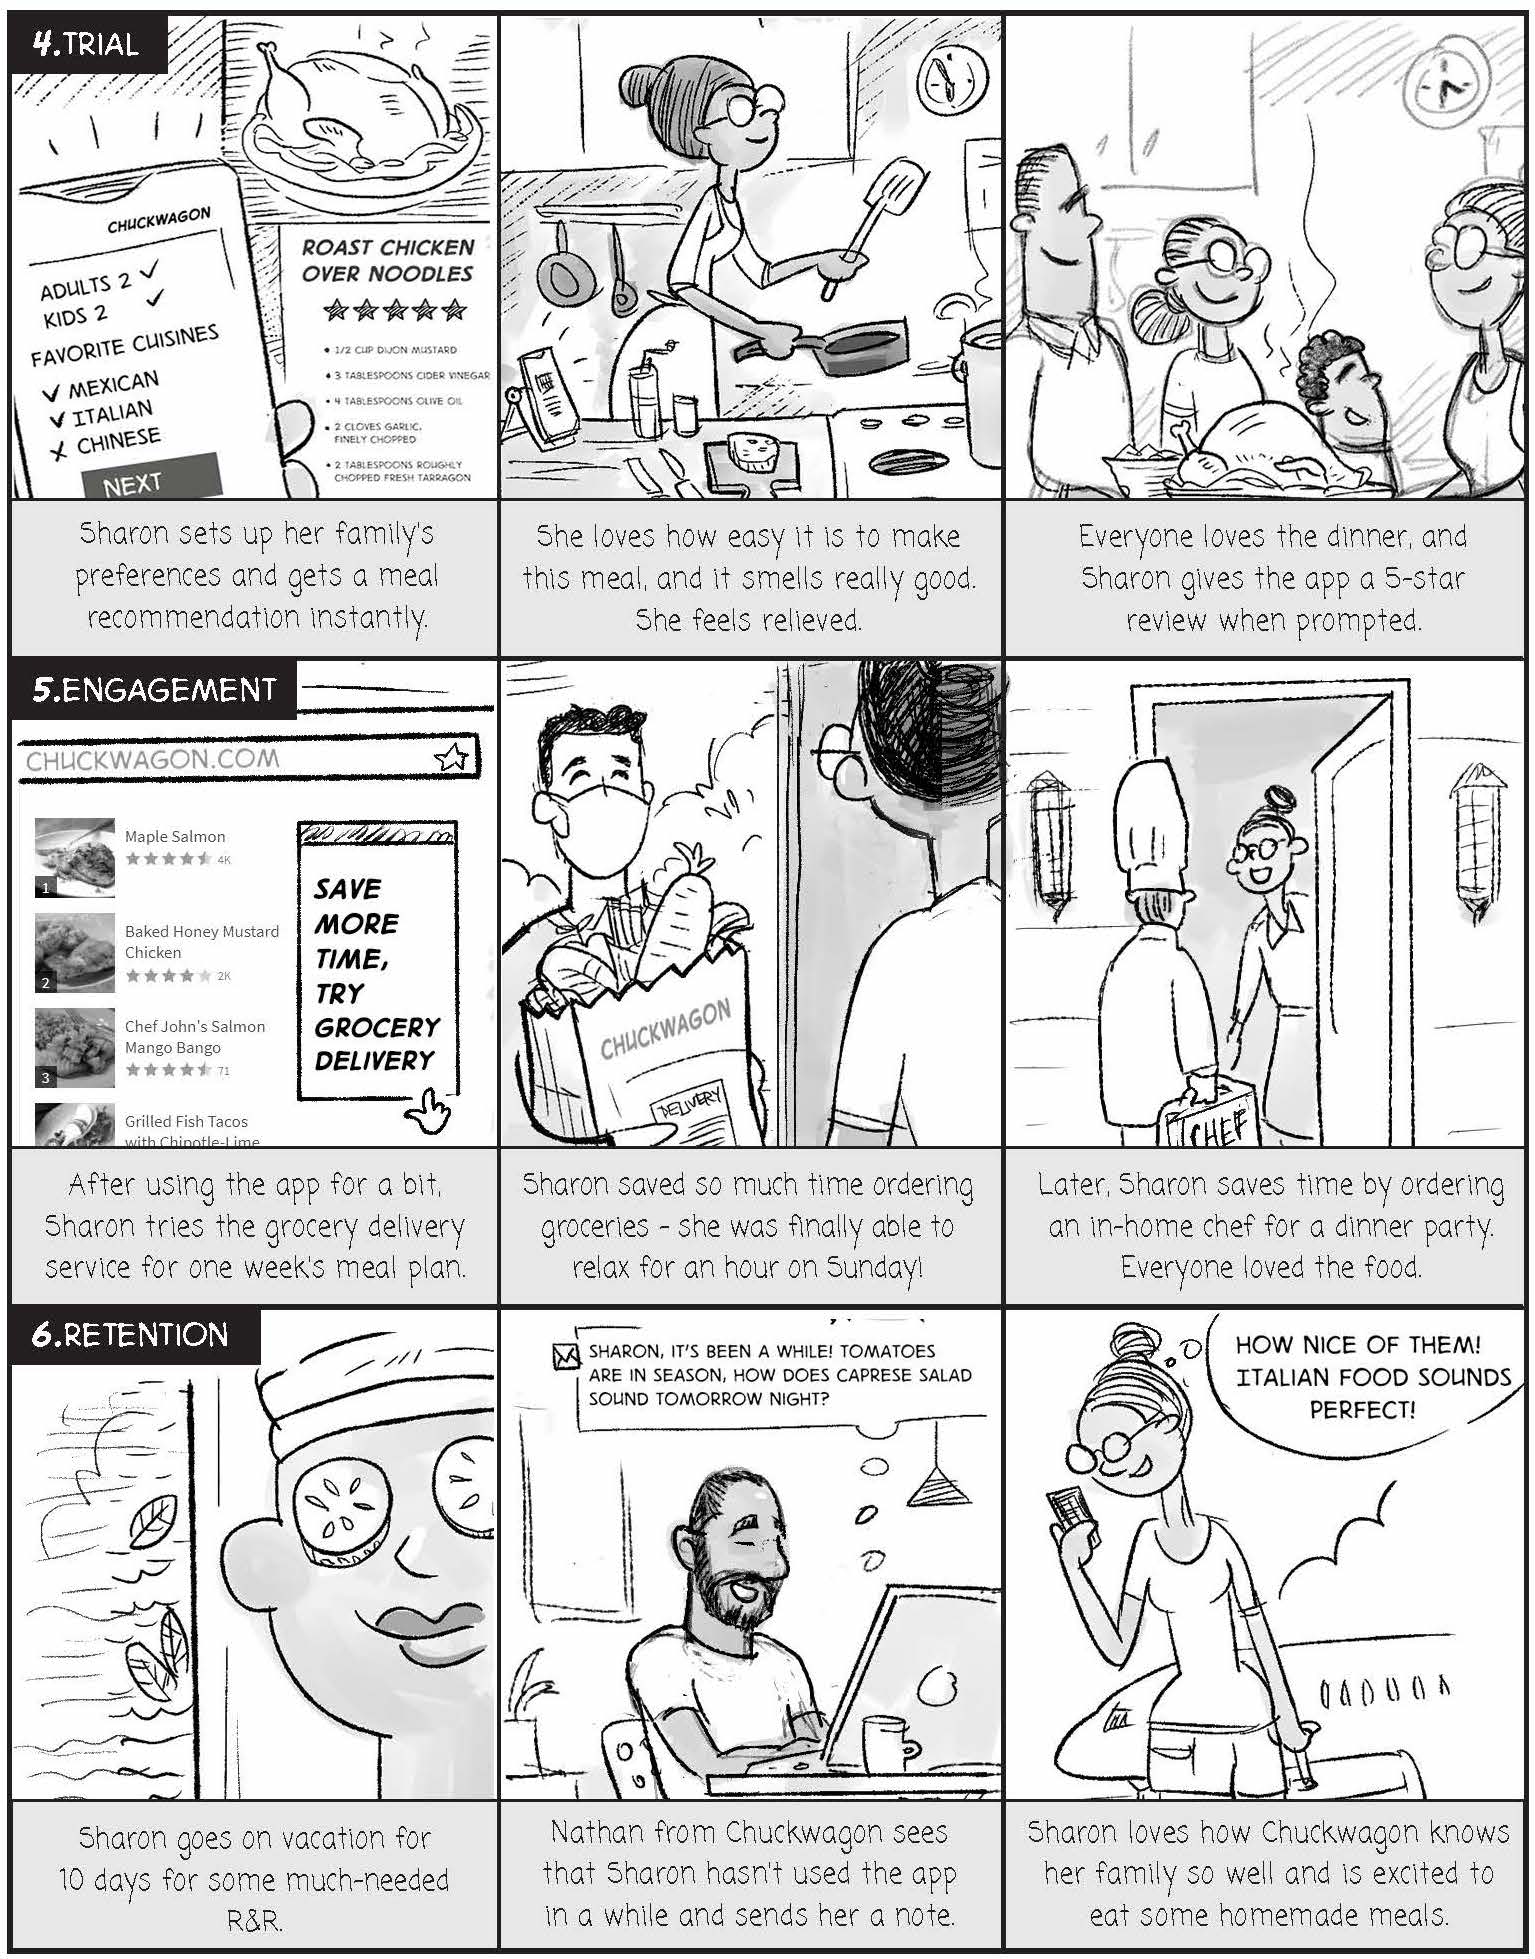 Chuckwagon_Comic_Strip (1)_Page_2